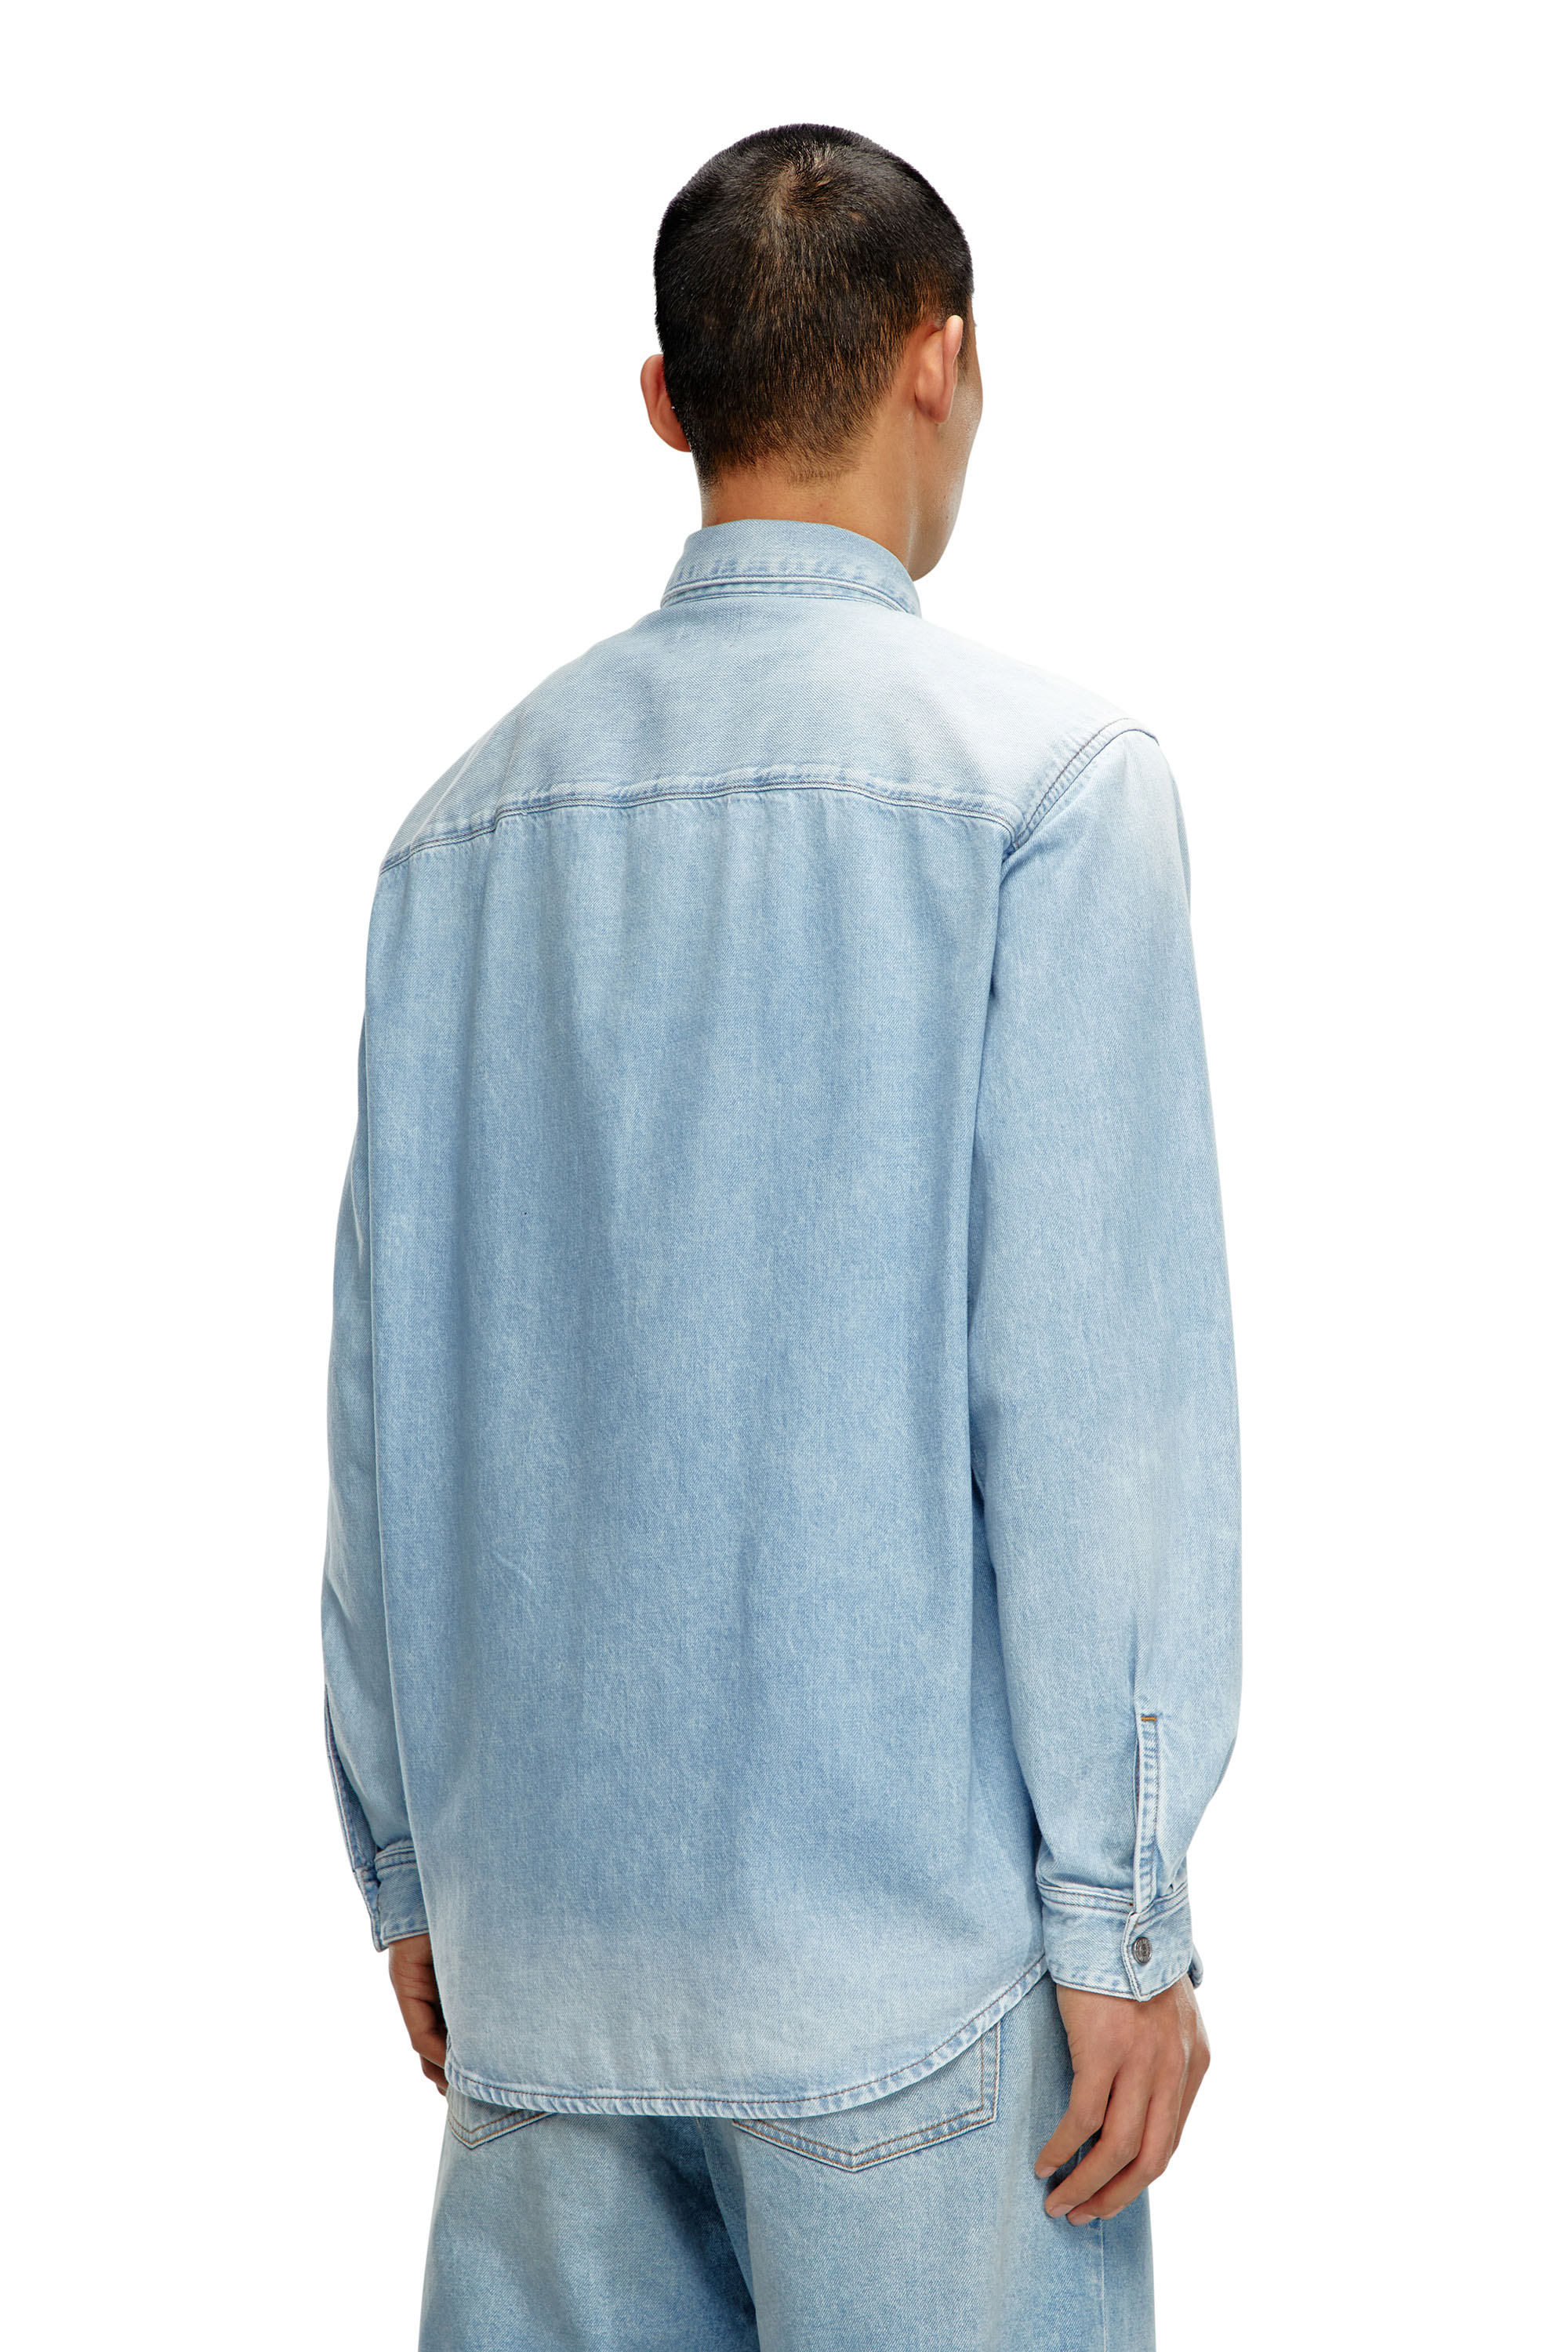 Diesel - D-SIMPLY, Male Shirt in denim in Blue - Image 2